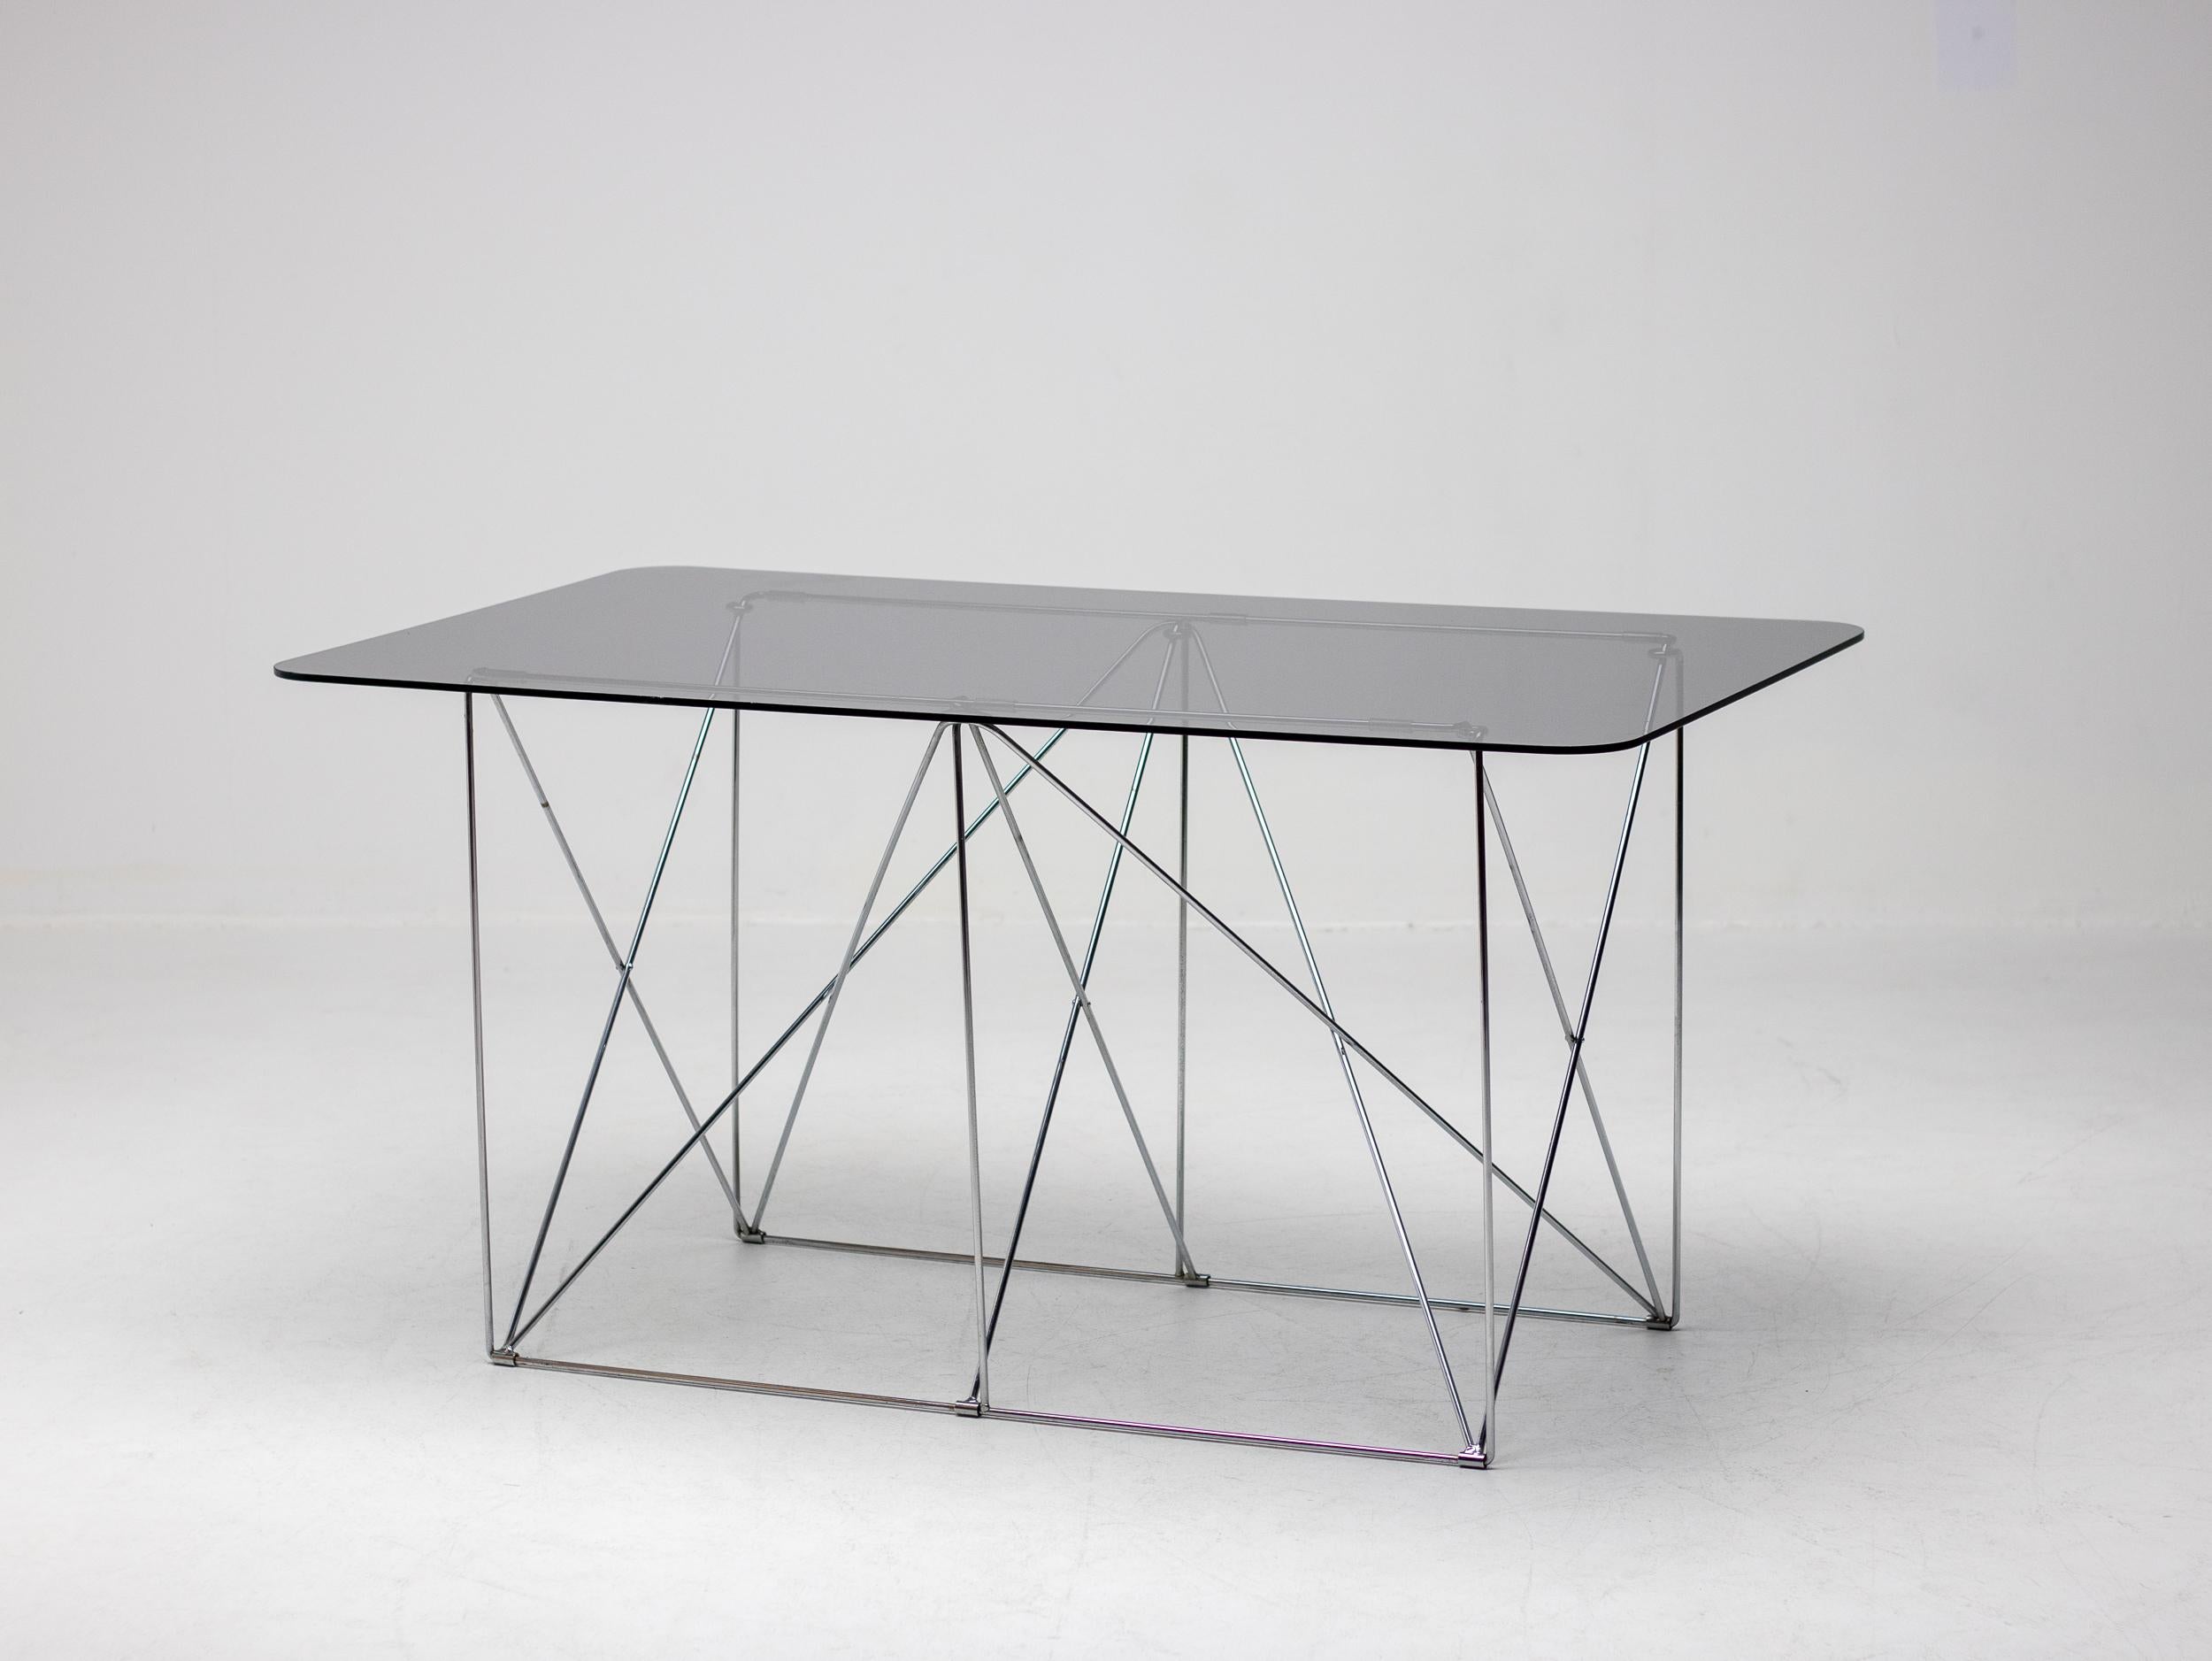 Dieser elegante klappbare Tisch aus verchromtem Stahl mit einer schwebenden Platte aus Rauchglas wurde von Max Sauze um 1970 in Frankreich entworfen. 

Max Sauze ist ein renommierter französischer Designer und Künstler, der für seine Pionierarbeit